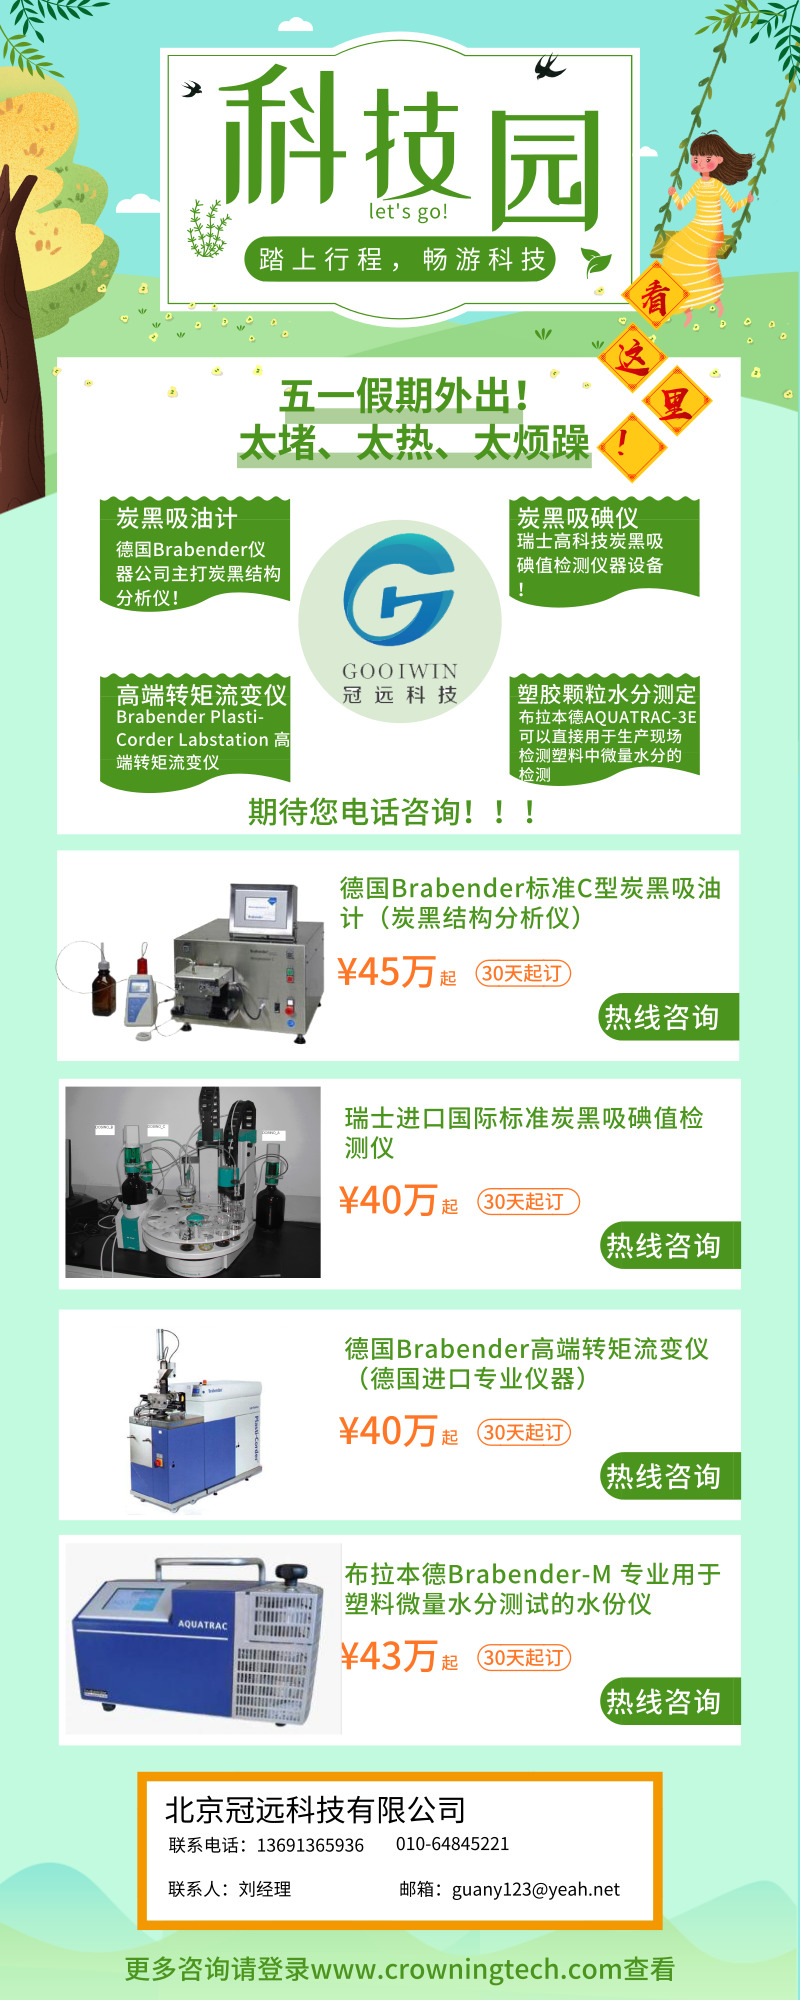 北京冠远科技有限公司高科技仪器设备购置项目